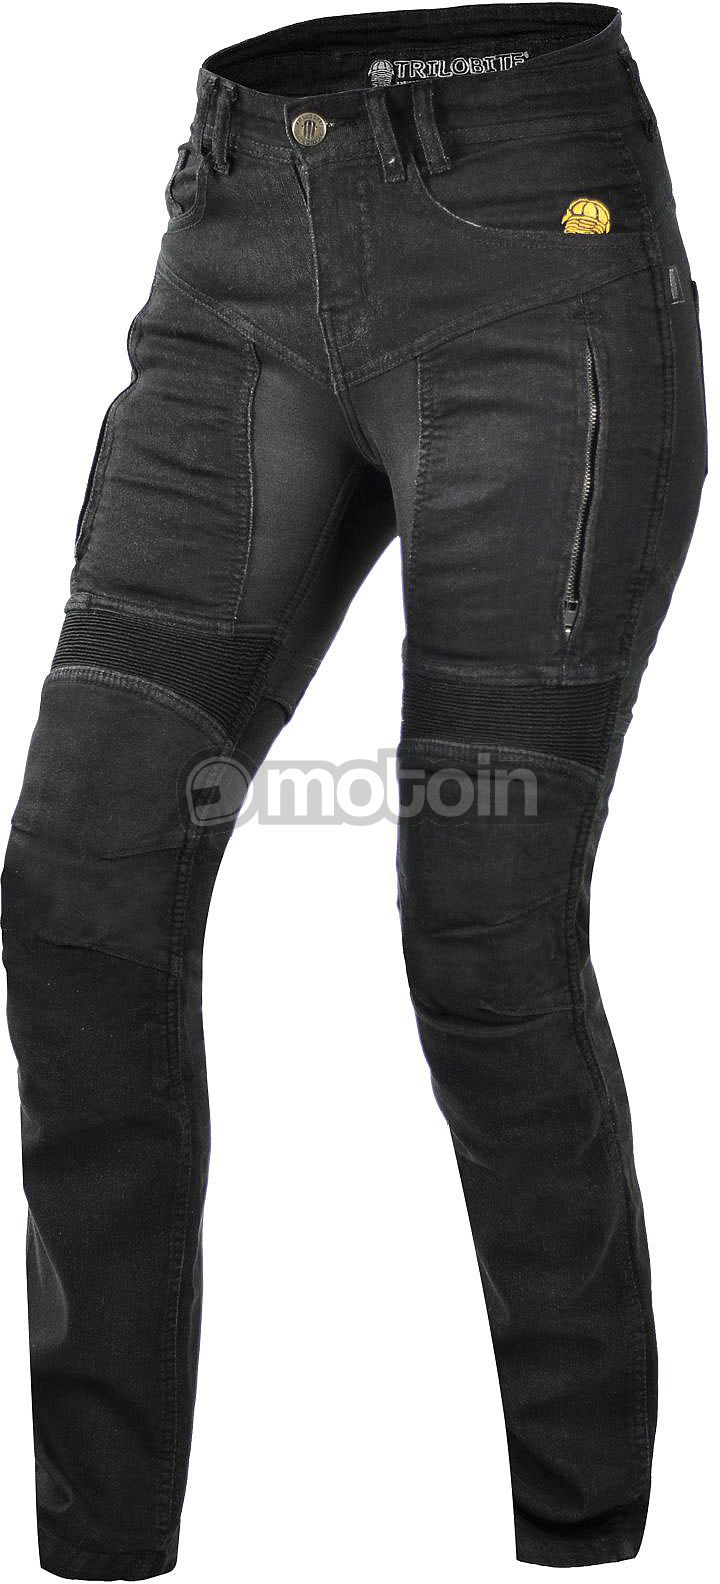 Trilobite Parado Slim-Fit, jeans femmes